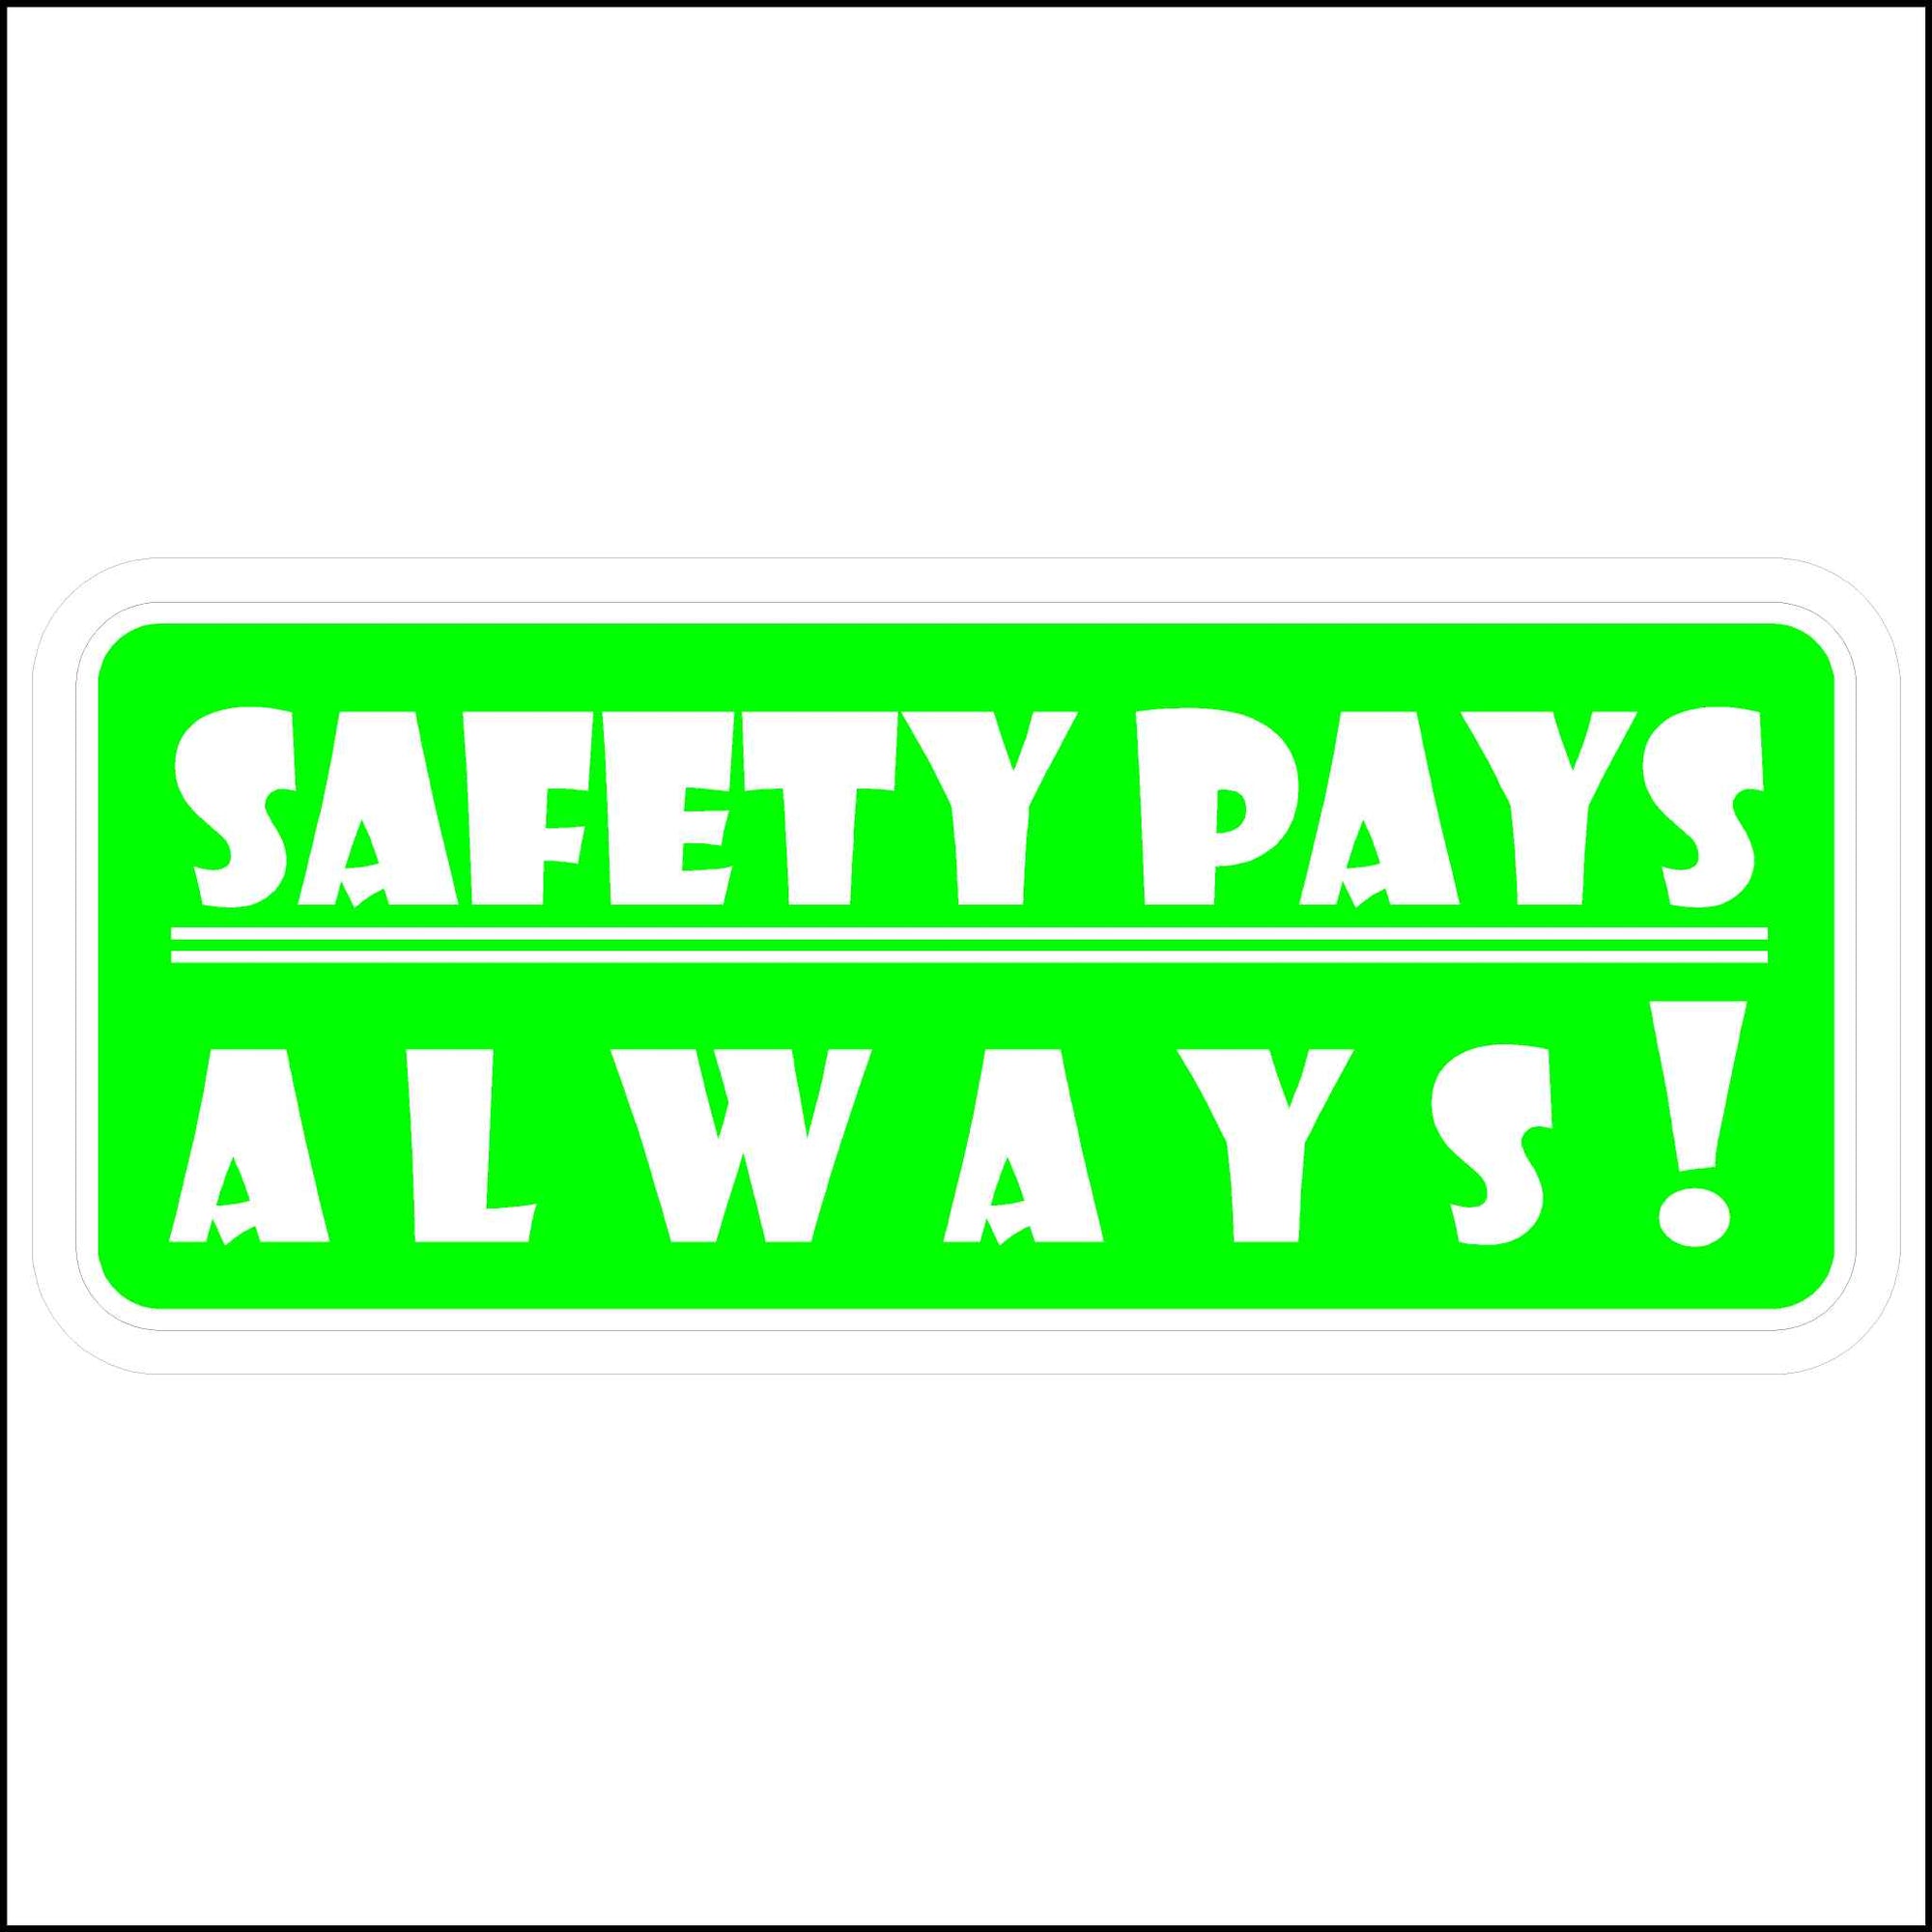 Hard Hat Safety Sticker Safety Pays Always